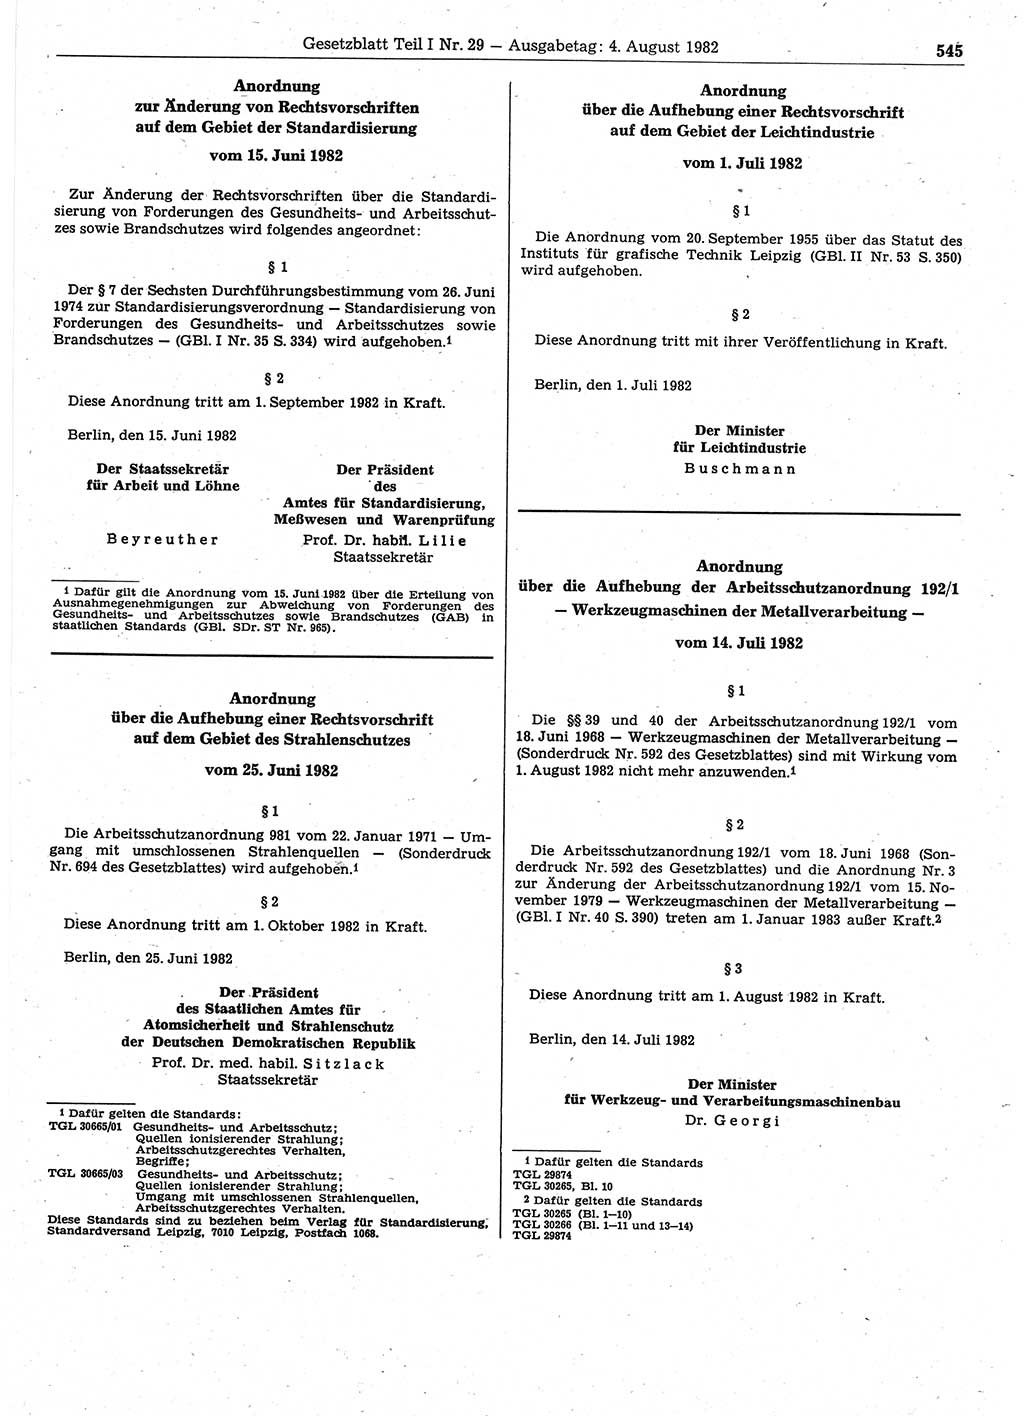 Gesetzblatt (GBl.) der Deutschen Demokratischen Republik (DDR) Teil Ⅰ 1982, Seite 545 (GBl. DDR Ⅰ 1982, S. 545)